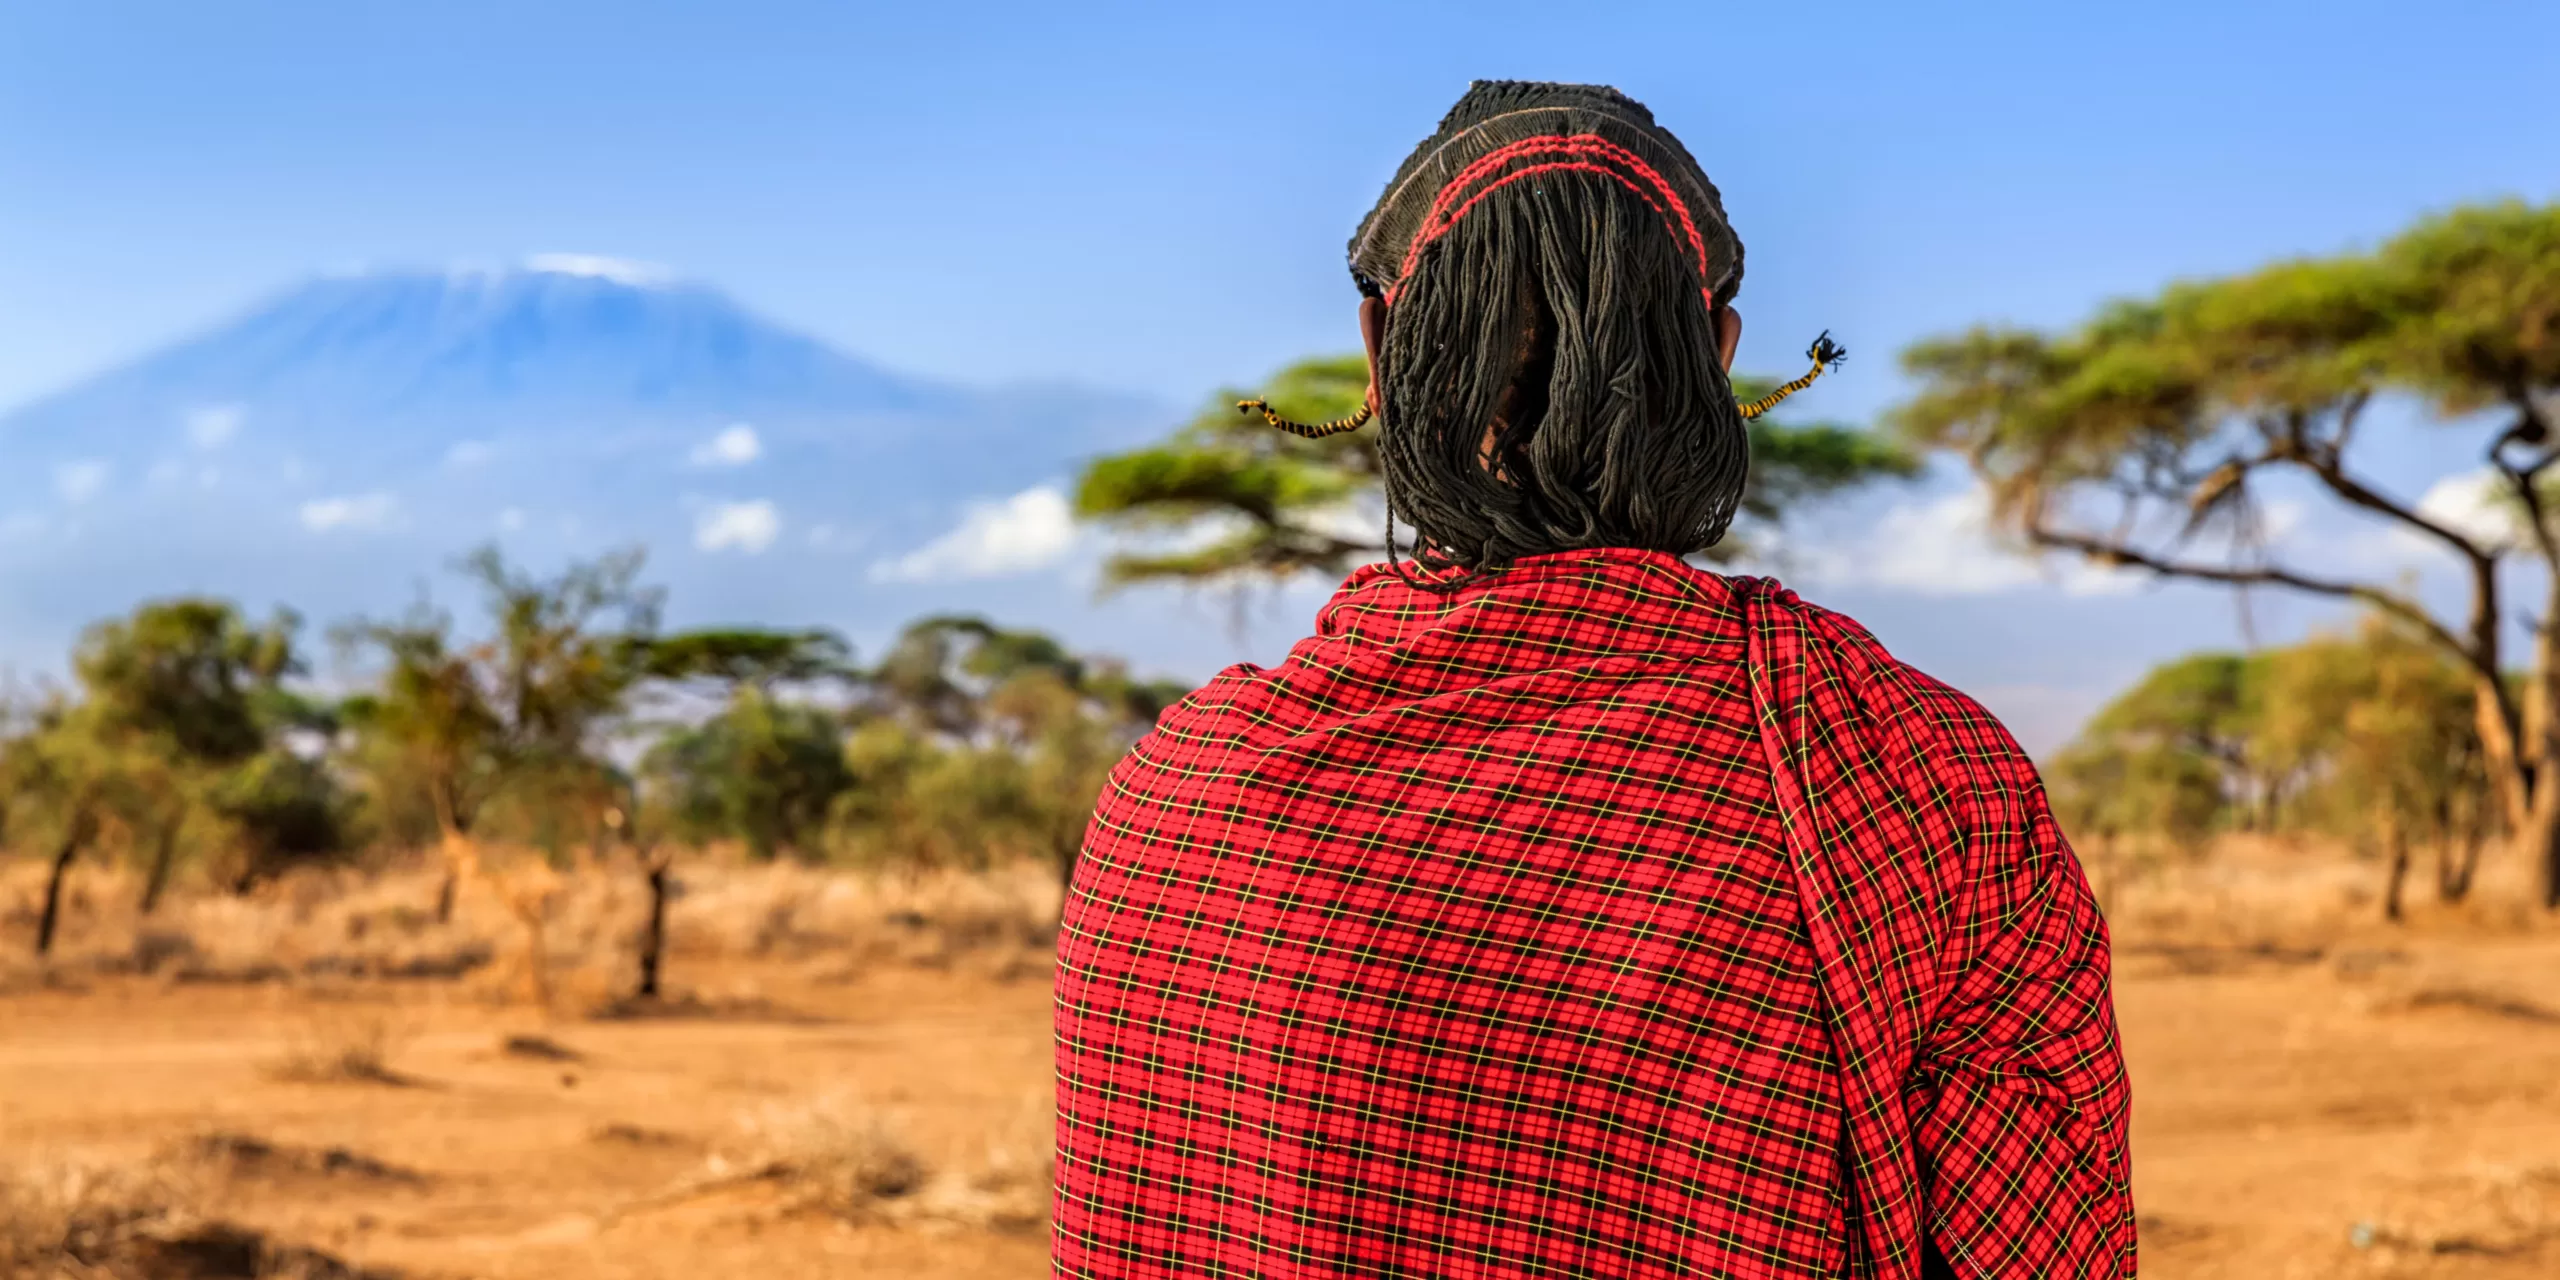 Le parc Amboseli, à voir lors d'un séjour au Kenya avec les Maasai et la vue imprenable sur le Kilimandjaro